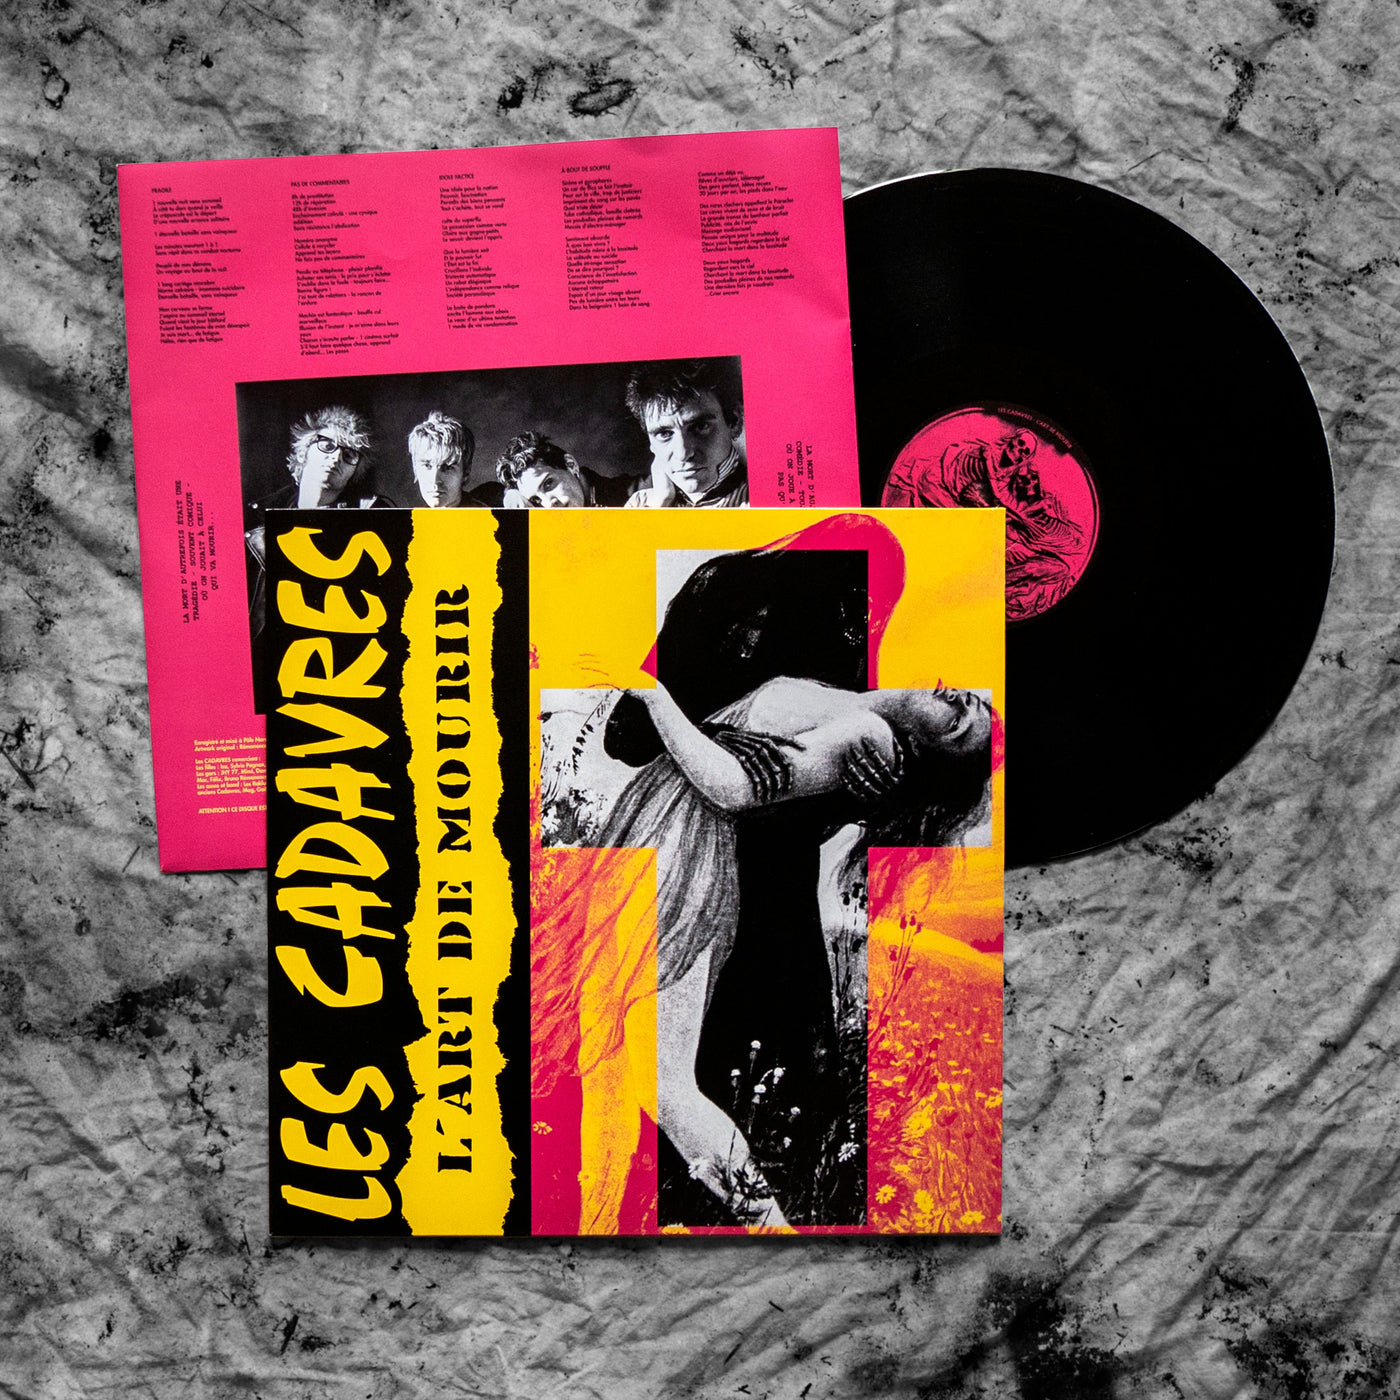 disque vinyle de l'album "L'Art De Mourir" du groupe LES CADAVRES, avec un insert reprenant les textes et photos